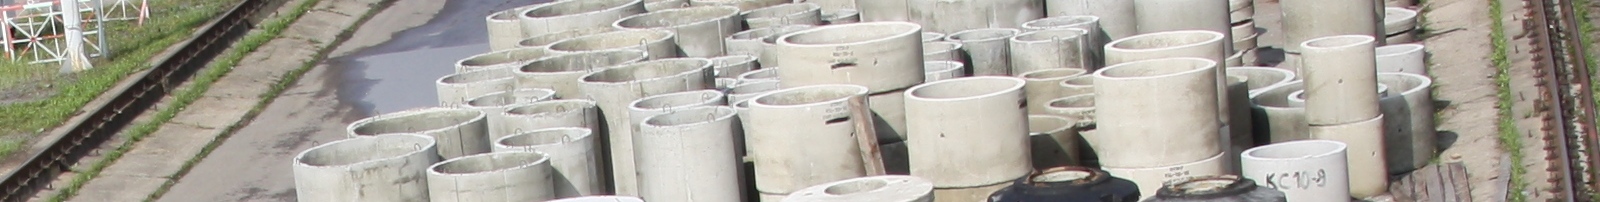 Угловые плиты днища каналов - Завод железобетонных изделий